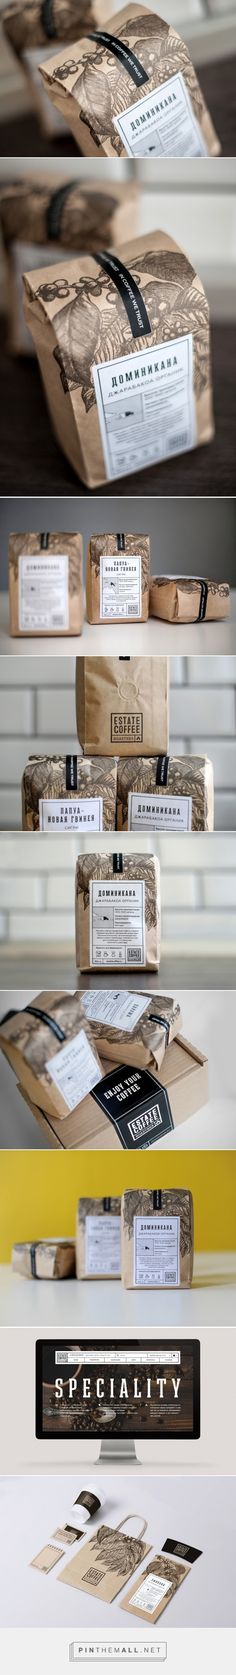 Estate Coffee Roasters packaging designed by AHEAD (Russia) - <a href="http://www.packagingoftheworld.com/2016/02/estate-coffee-roasters.html" rel="nofollow" target="_blank">www.packagingofth...</a>